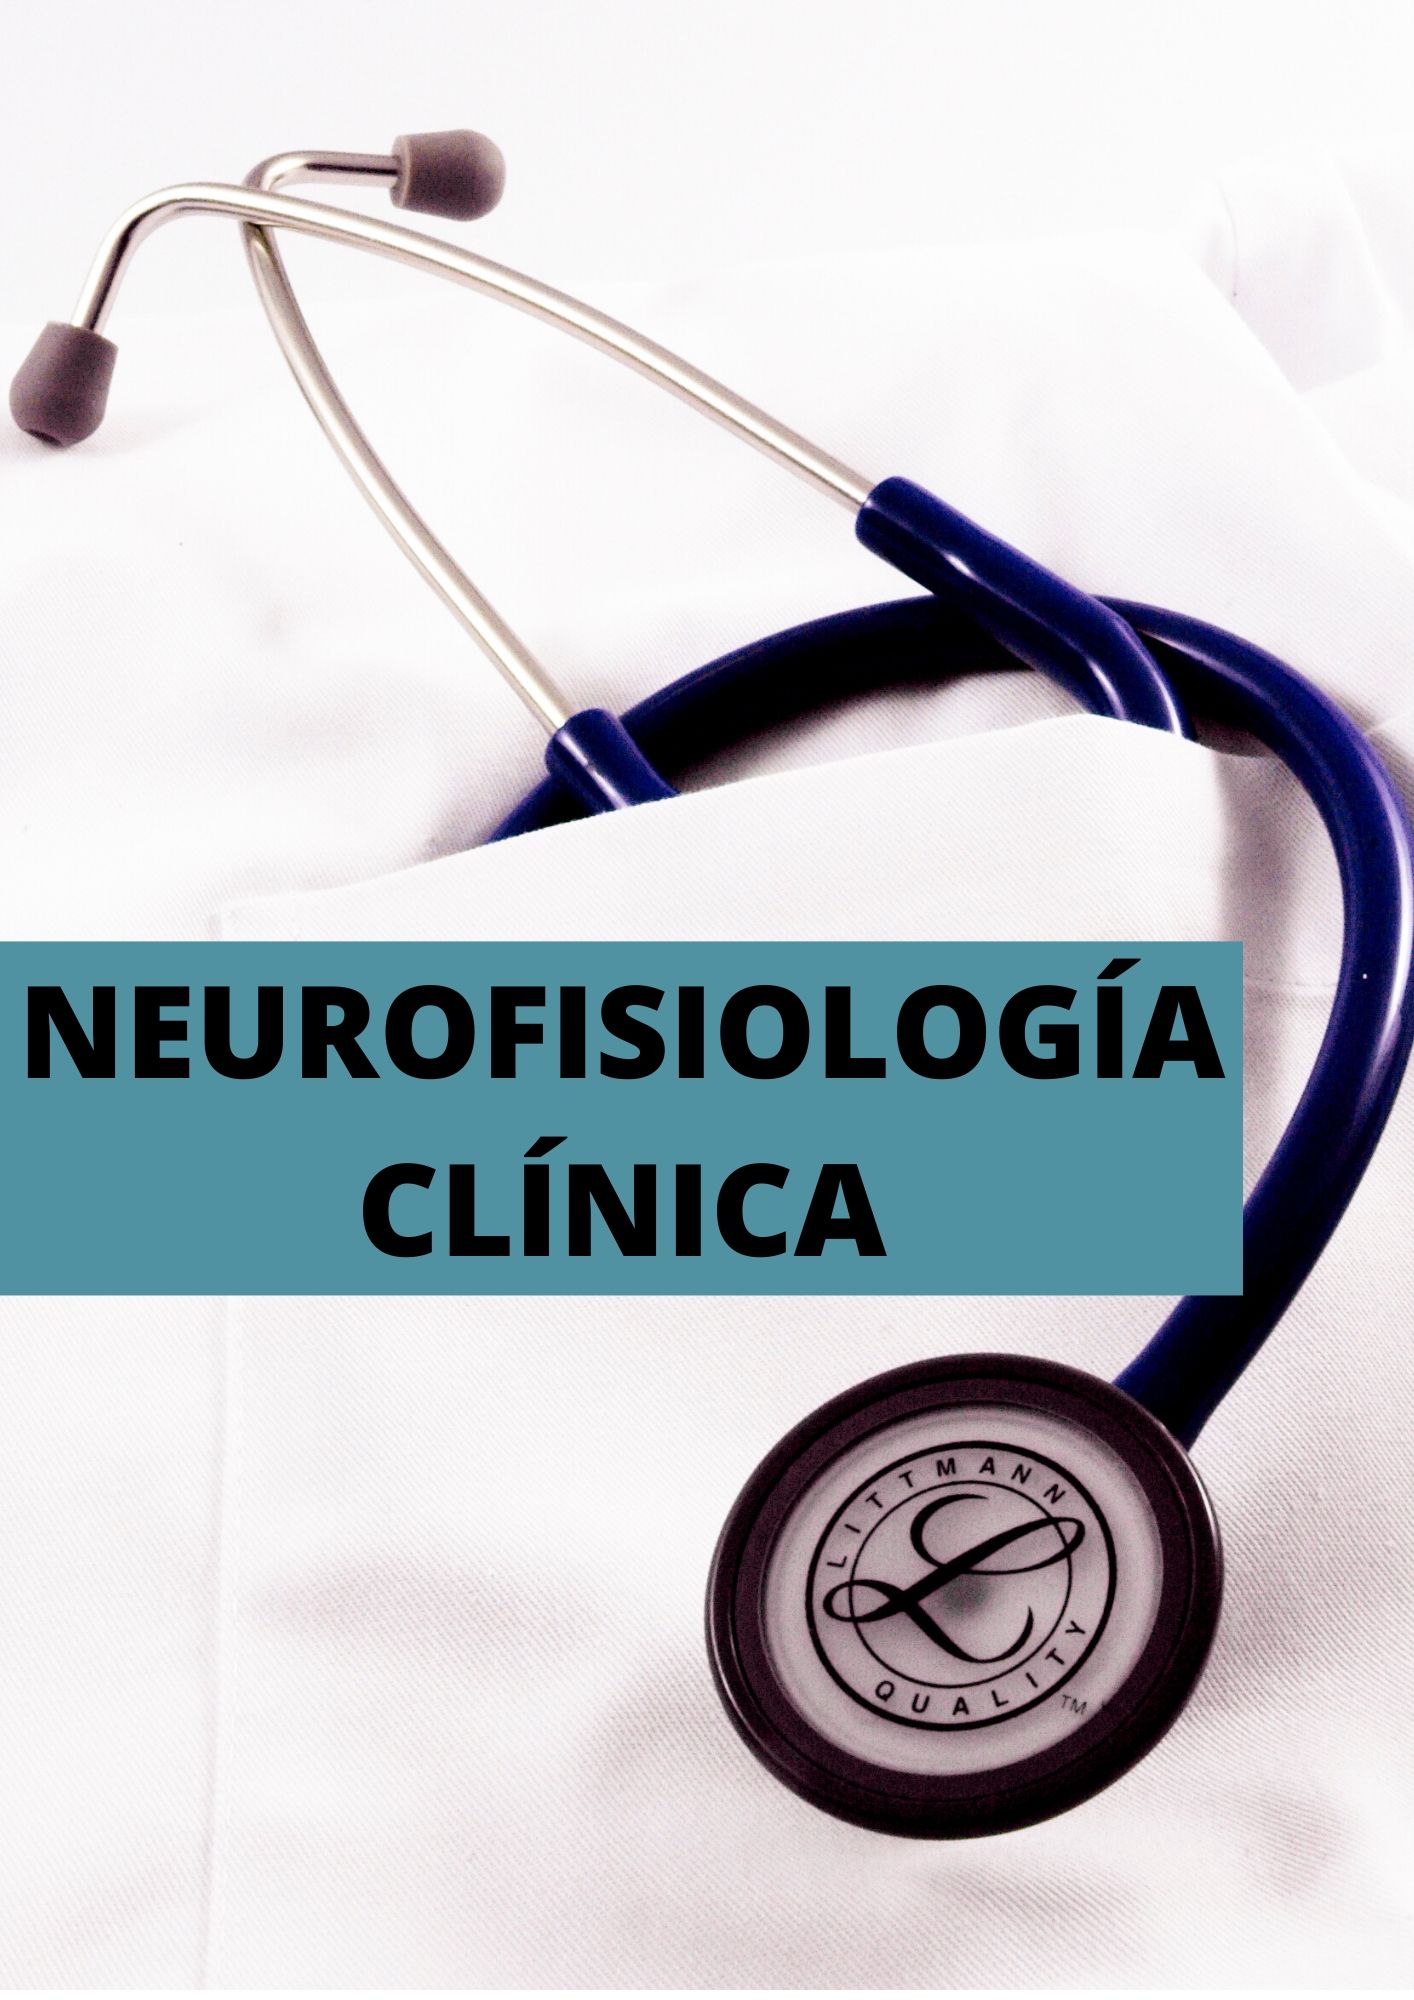 resum neurofisiologia clinica ESP